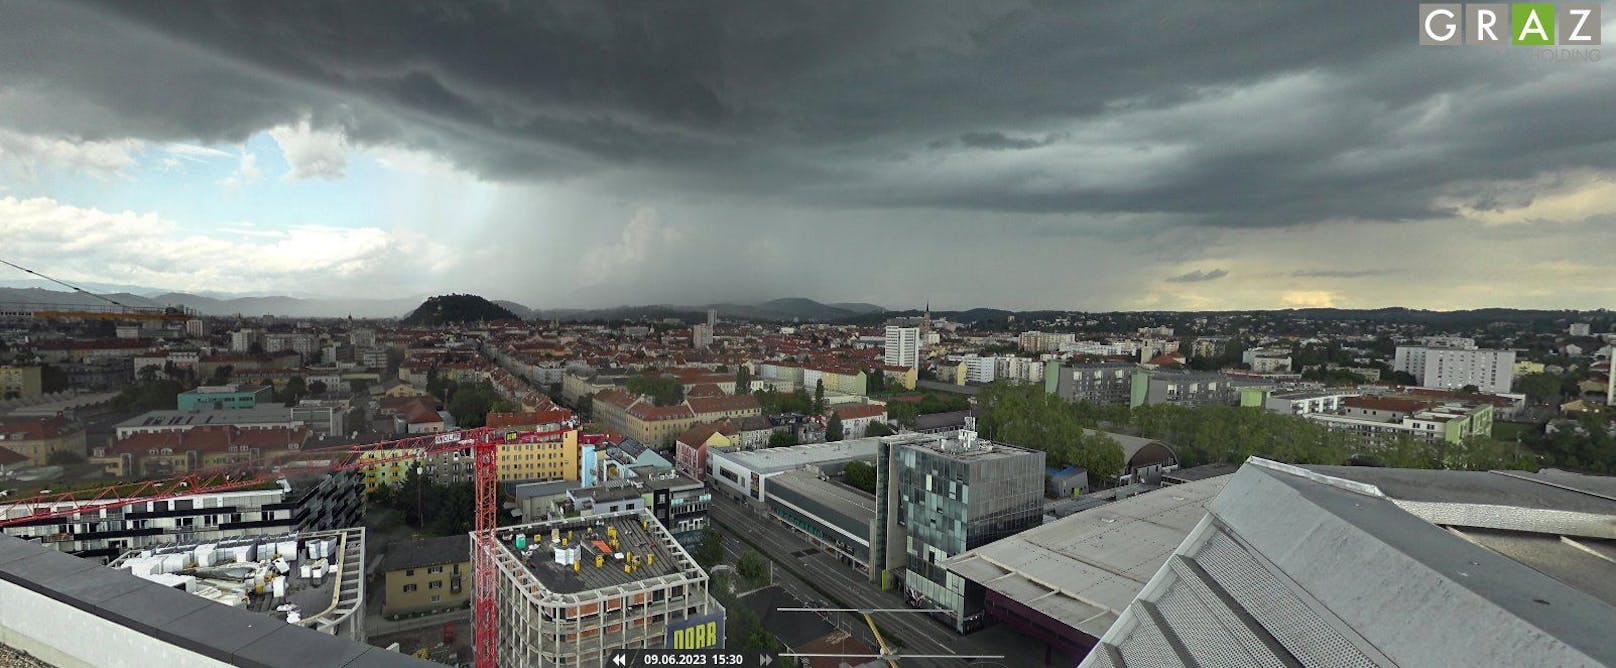 Starkes Gewitter über Graz – es hagelt in weiten Teilen Österreichs.